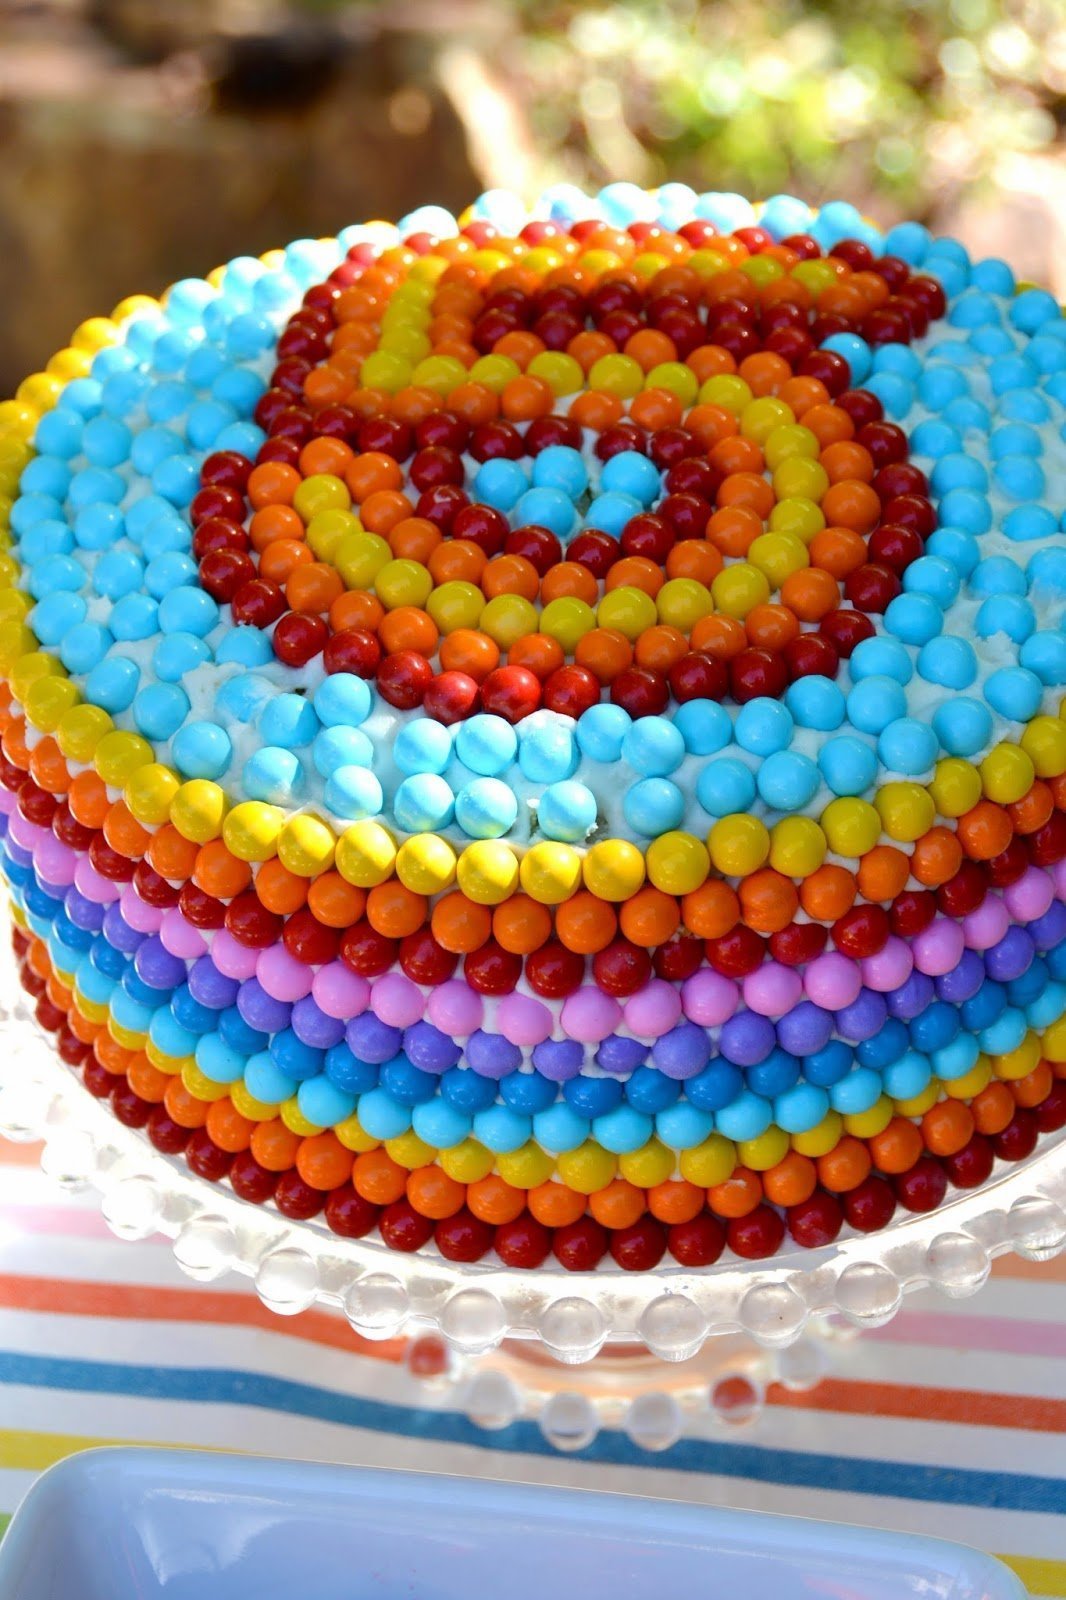 Как украсить торт на день рождения девочке?